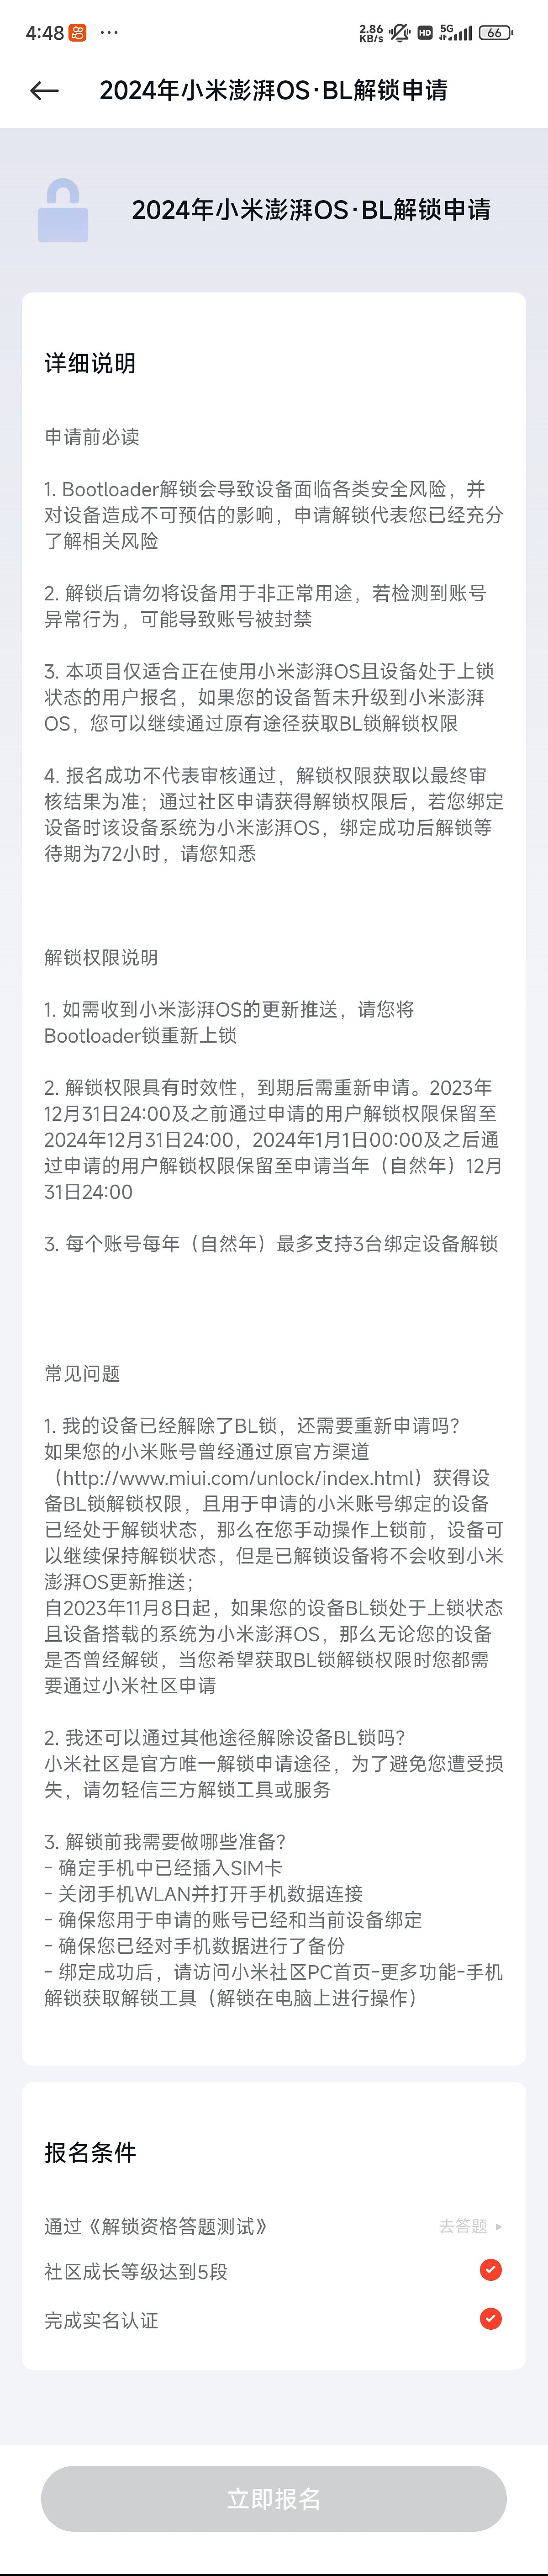 小米：澎湃 OS 的 Bootloader 解锁权限将仅针对开发者和手机发烧友开放 - 2